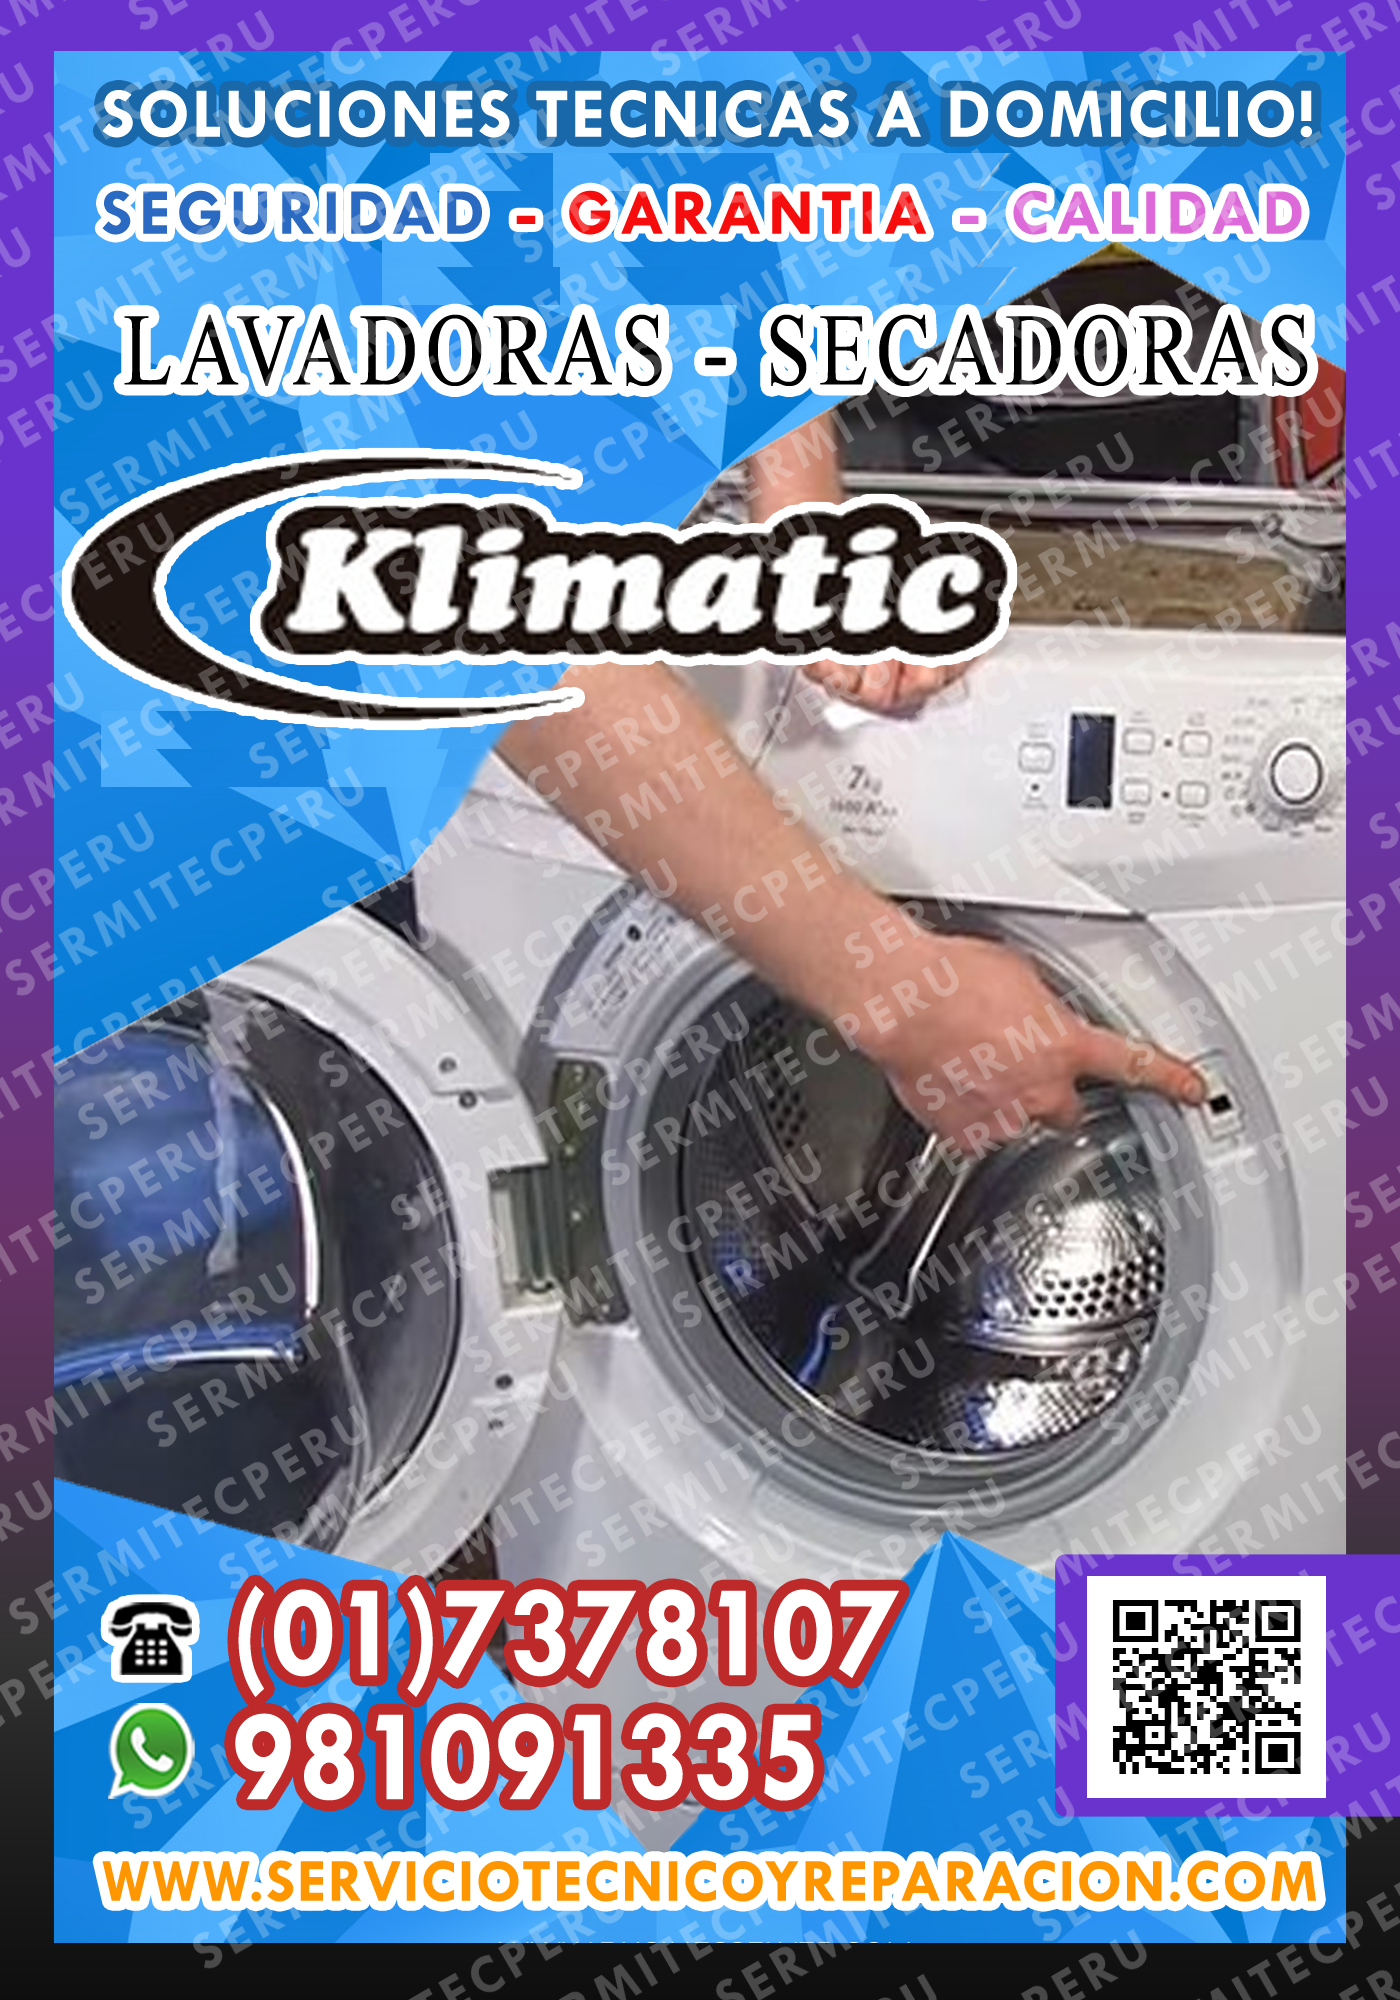 A1-Profesionales Klimatic- servicio en lavadoras-secadoras#7378107 en Lince